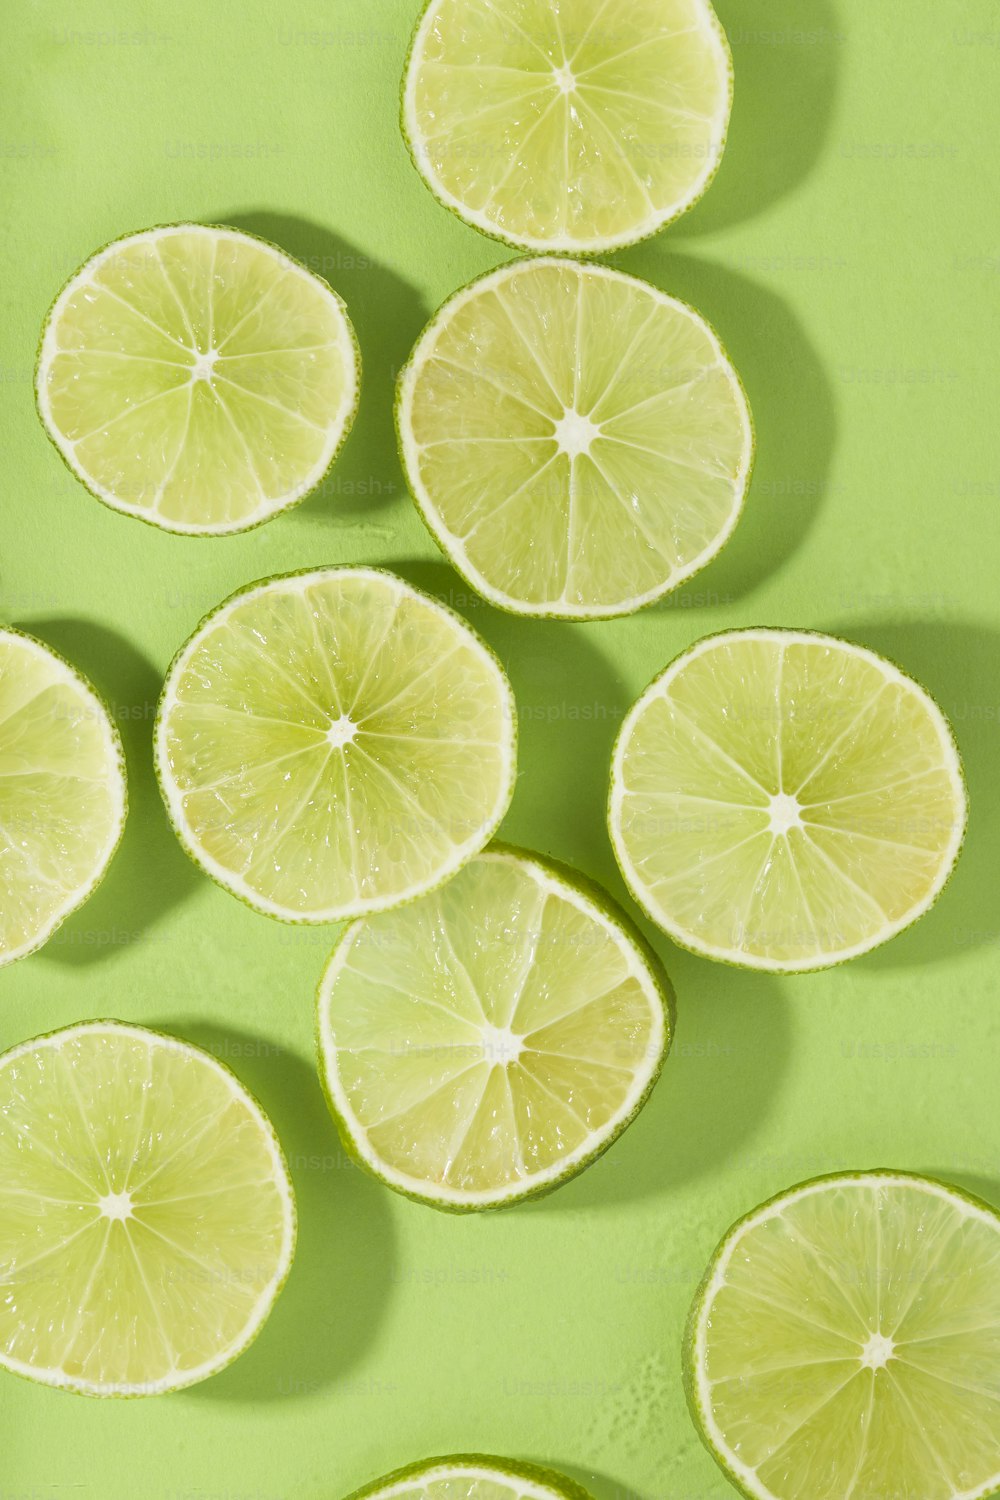 녹색 표면에 반으로 자른 레몬 그룹